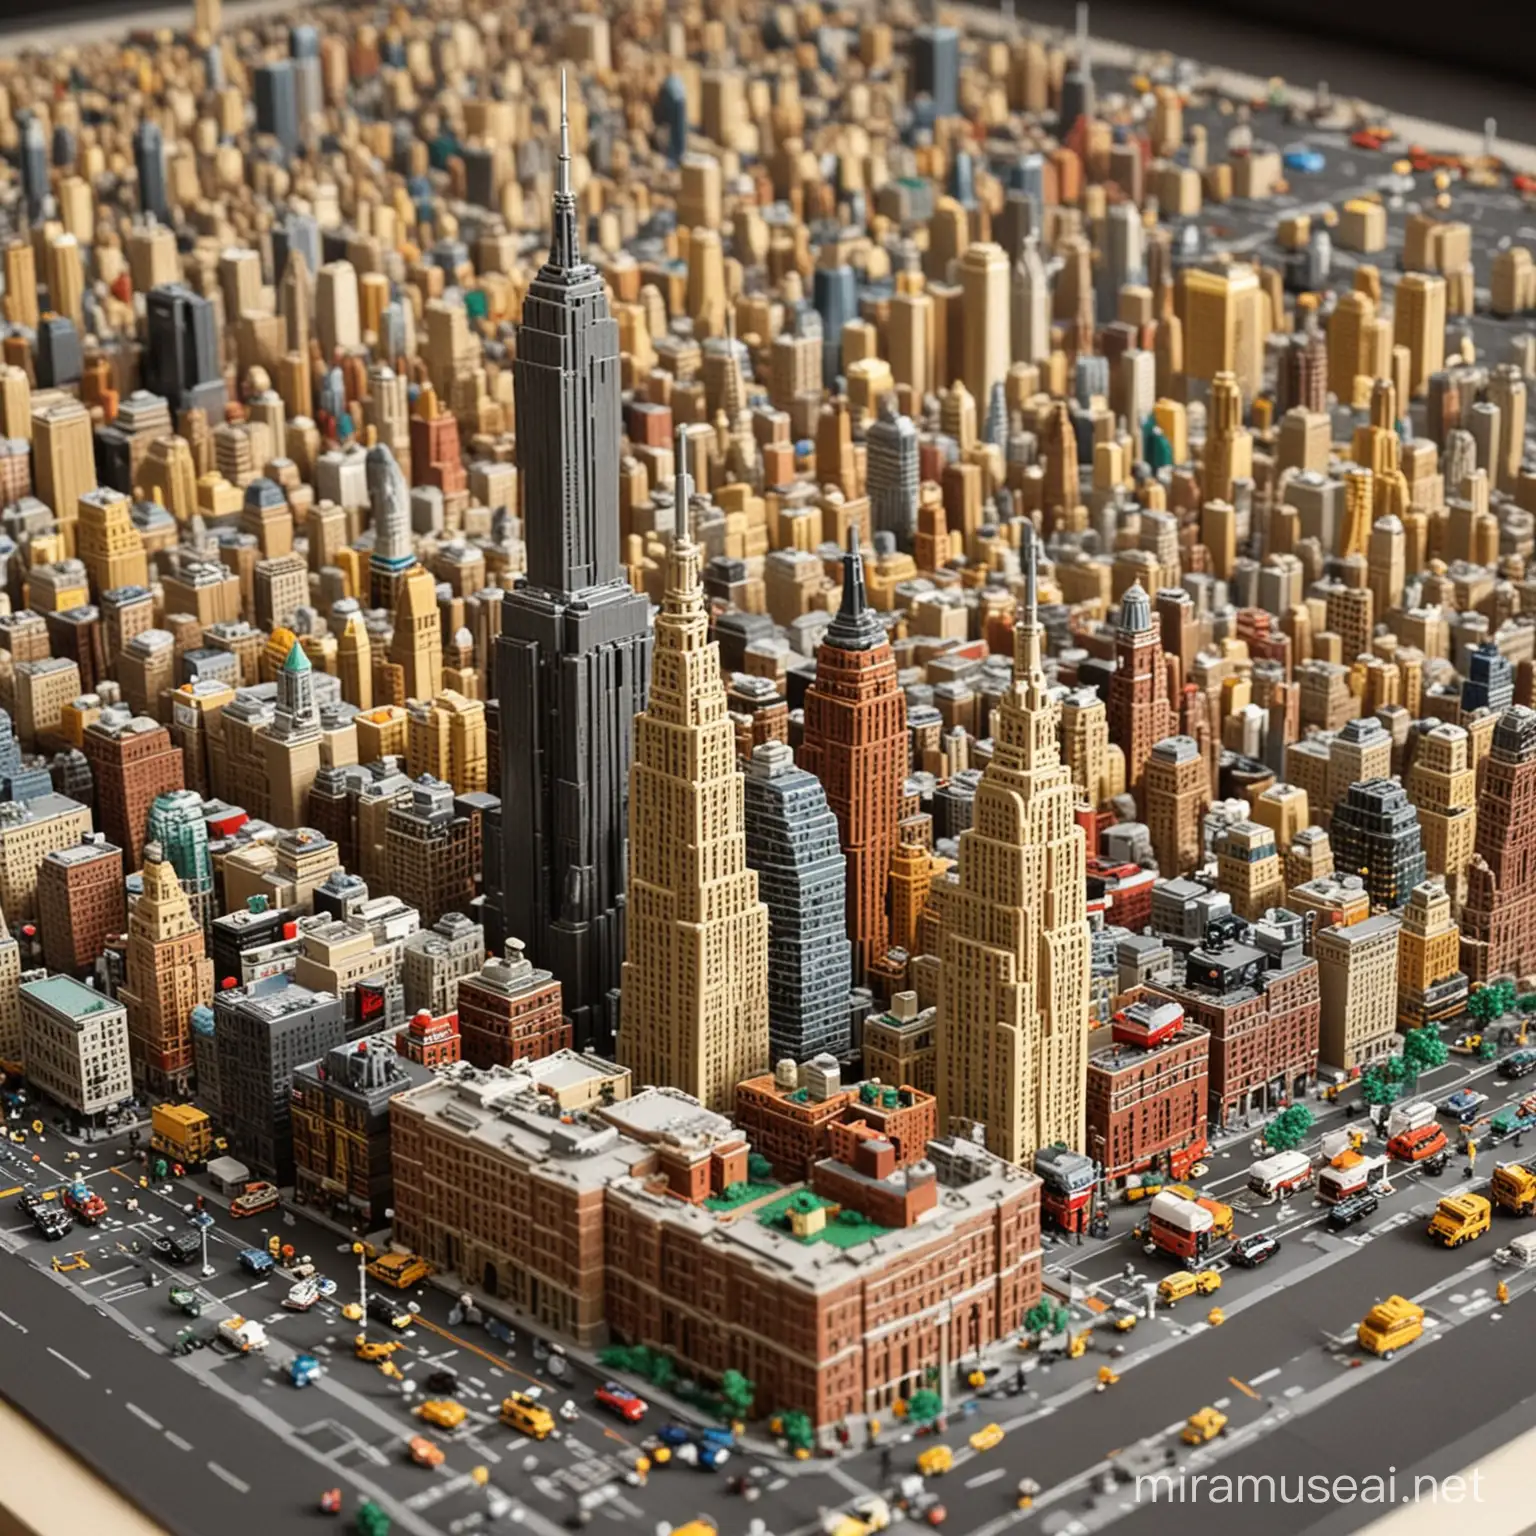 Lego New York Cityscape Colorful Brick Interpretation of Iconic Landmarks